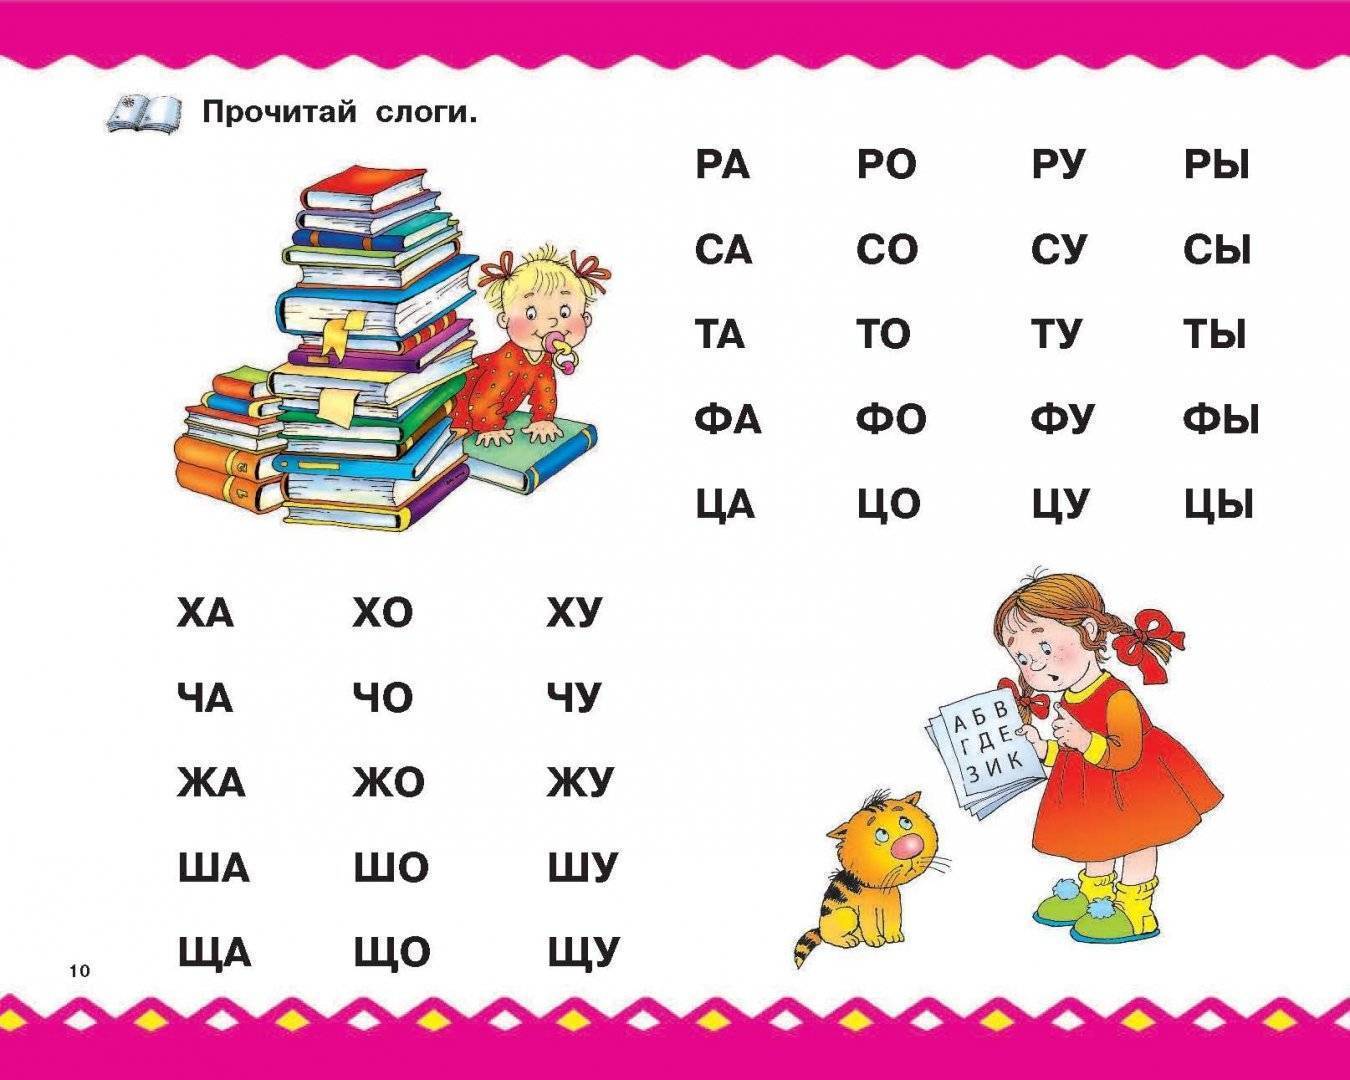 Пошаговый план как научить ребёнка читать по слогам в домашних условиях